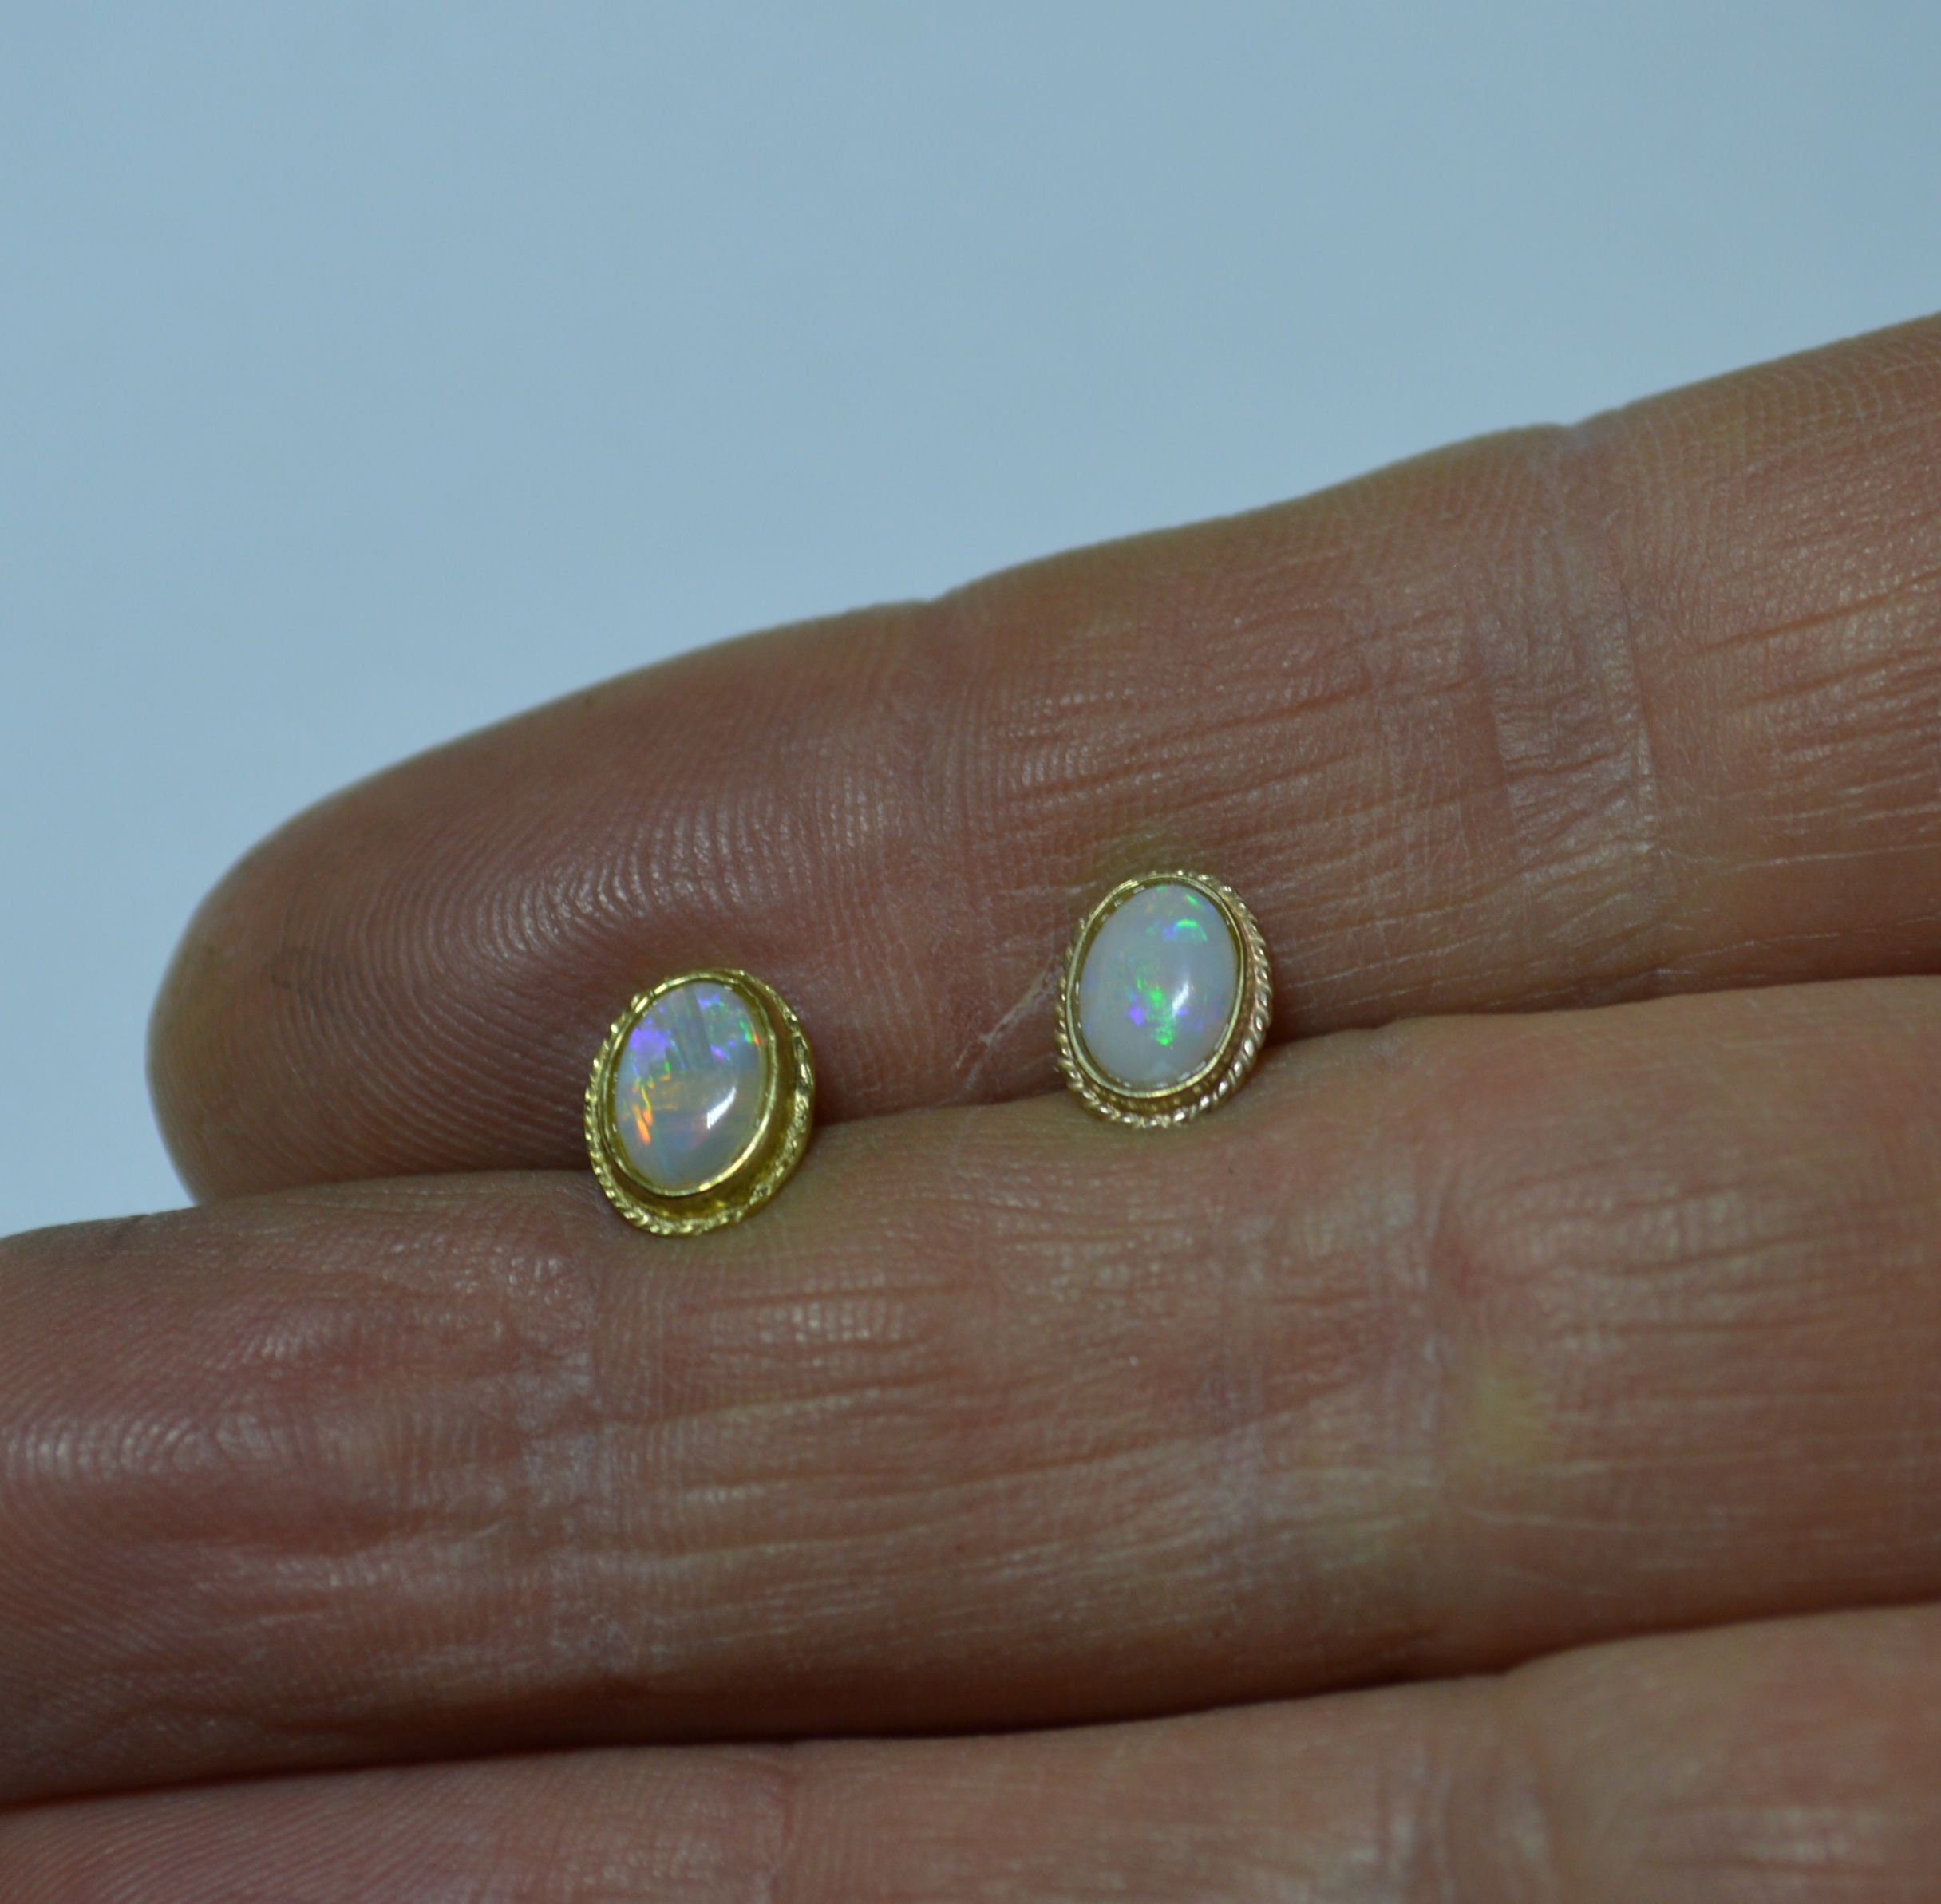 9ct Gold Oval Opal Stud Earrings, Australian Opals